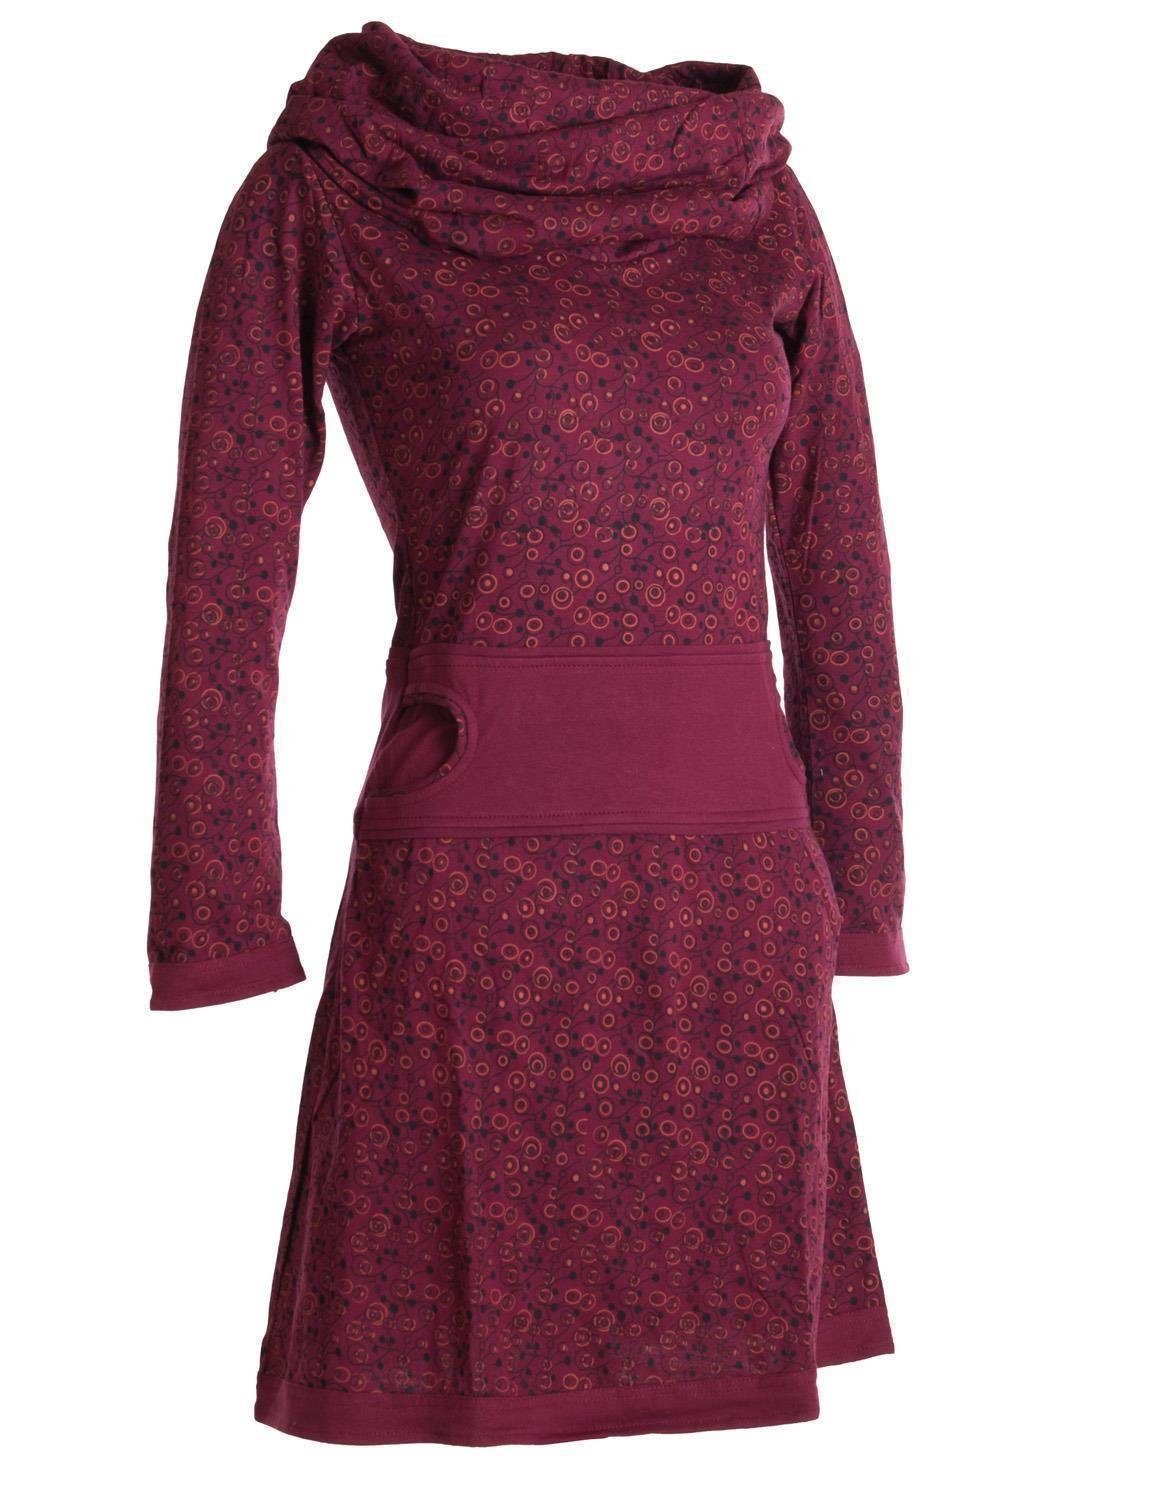 Vishes Jerseykleid Bedrucktes mit Schalkragen Style Goa, aus dunkelrot Ethno, Hippie Baumwolle Boho, Kleid